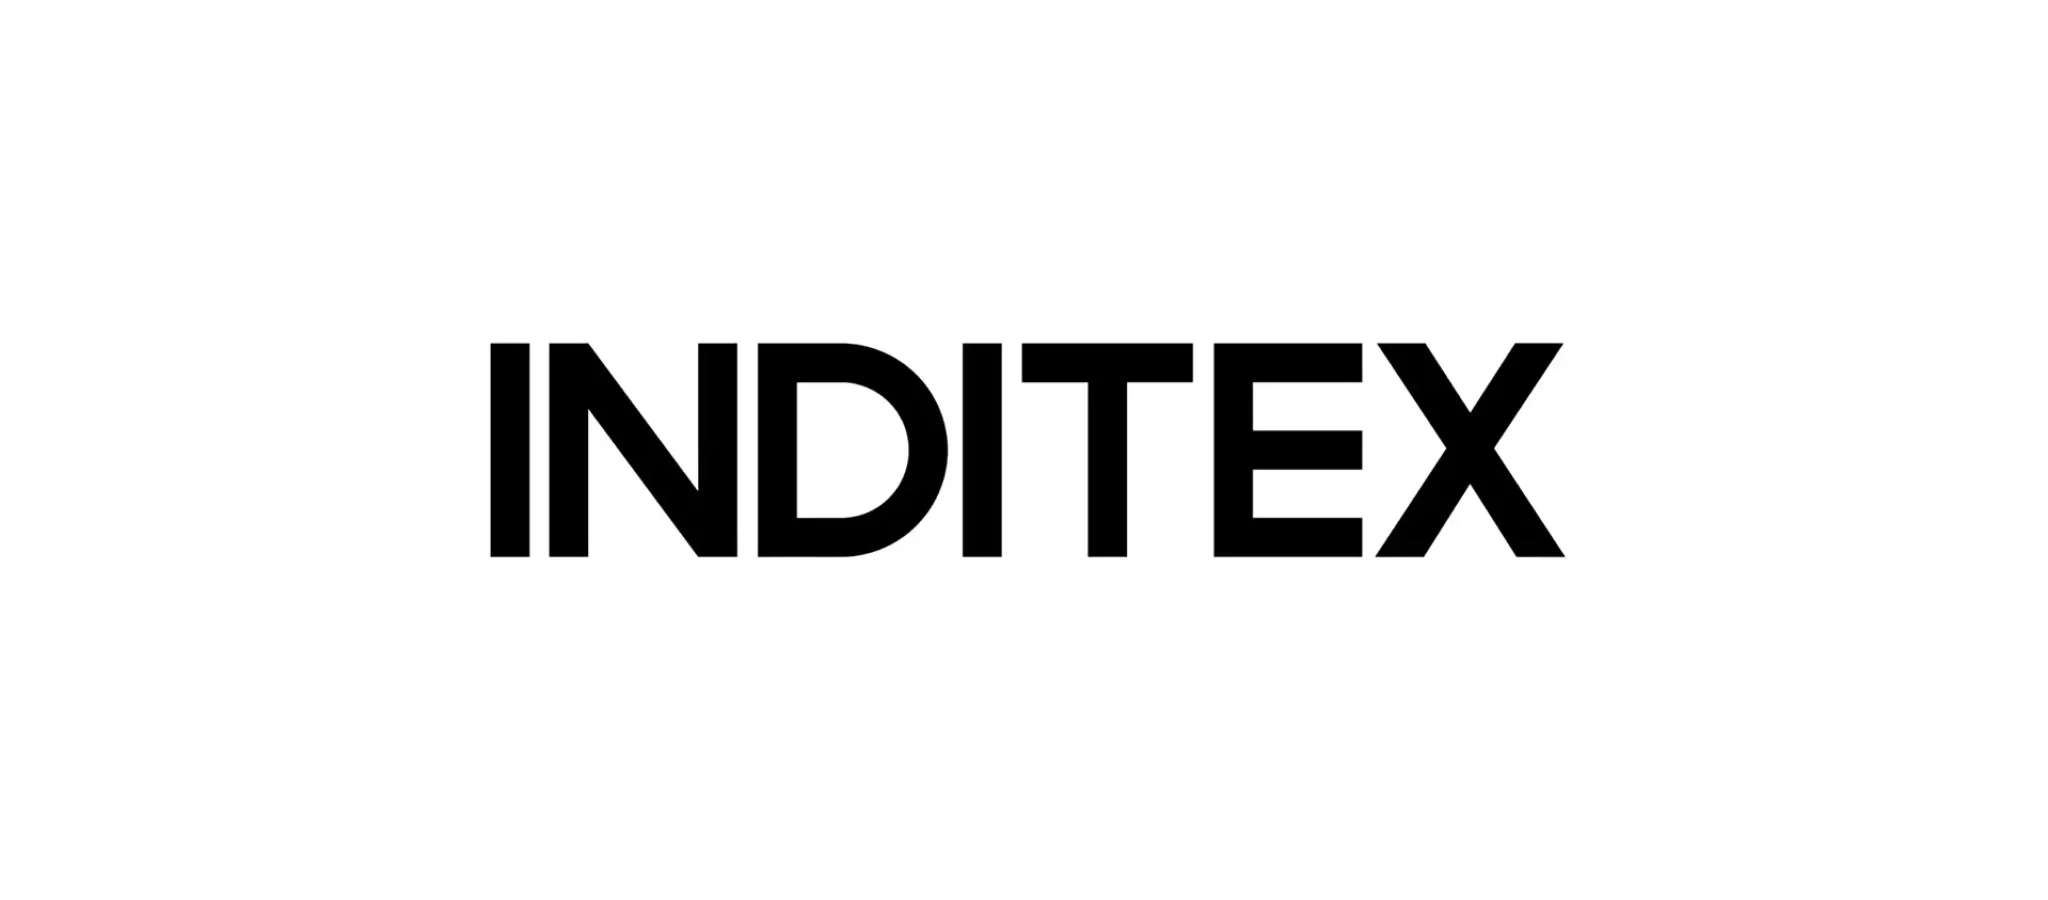 posicionamiento marcas Inditex